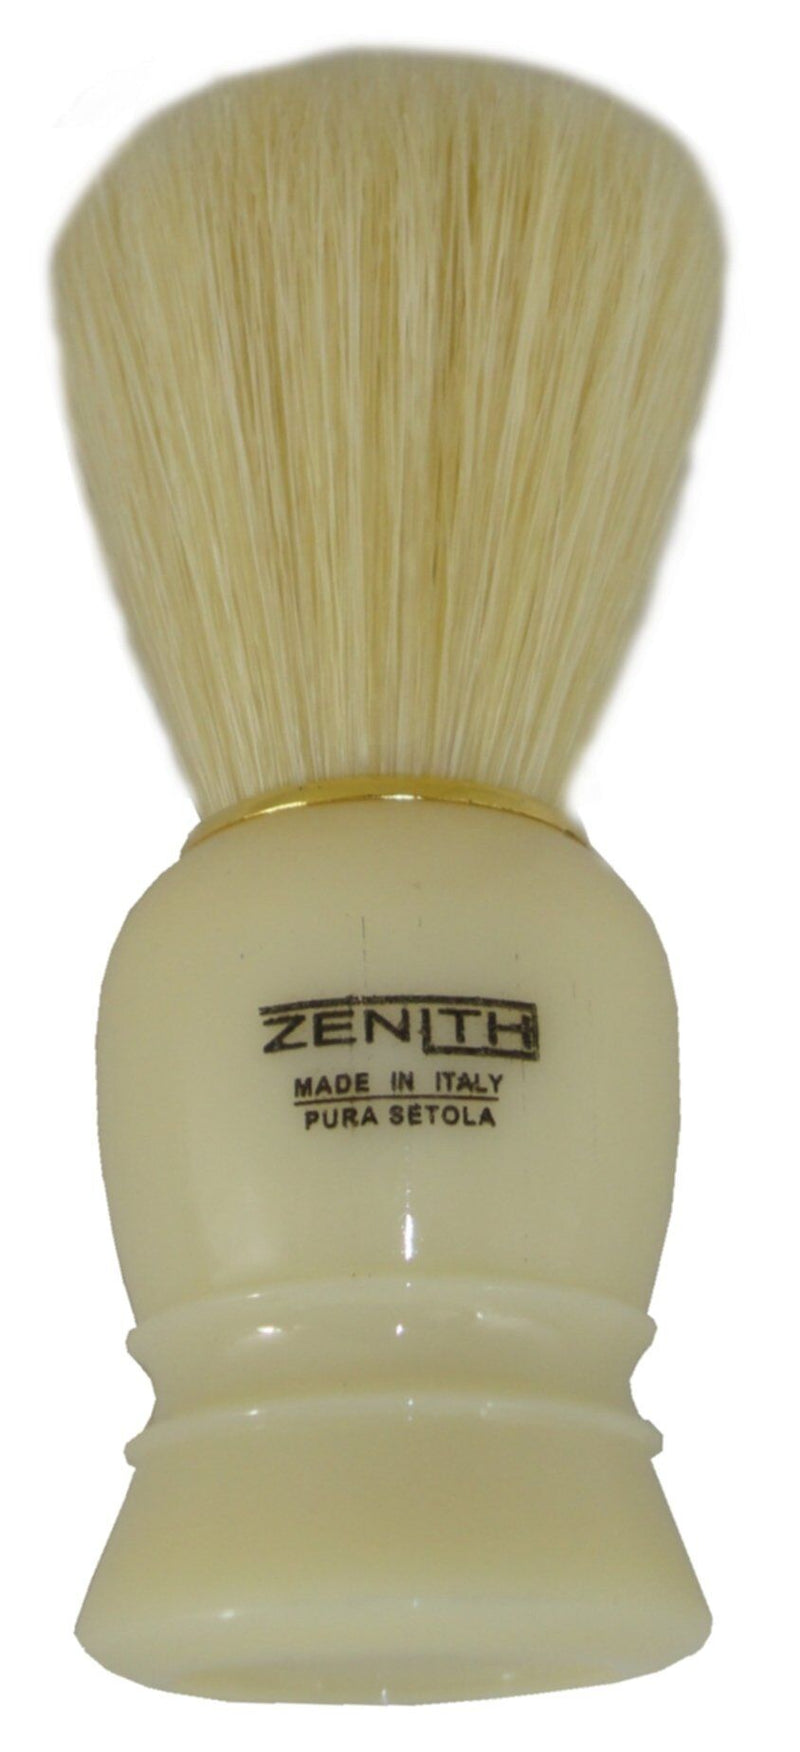 Zenith Shaving Brush